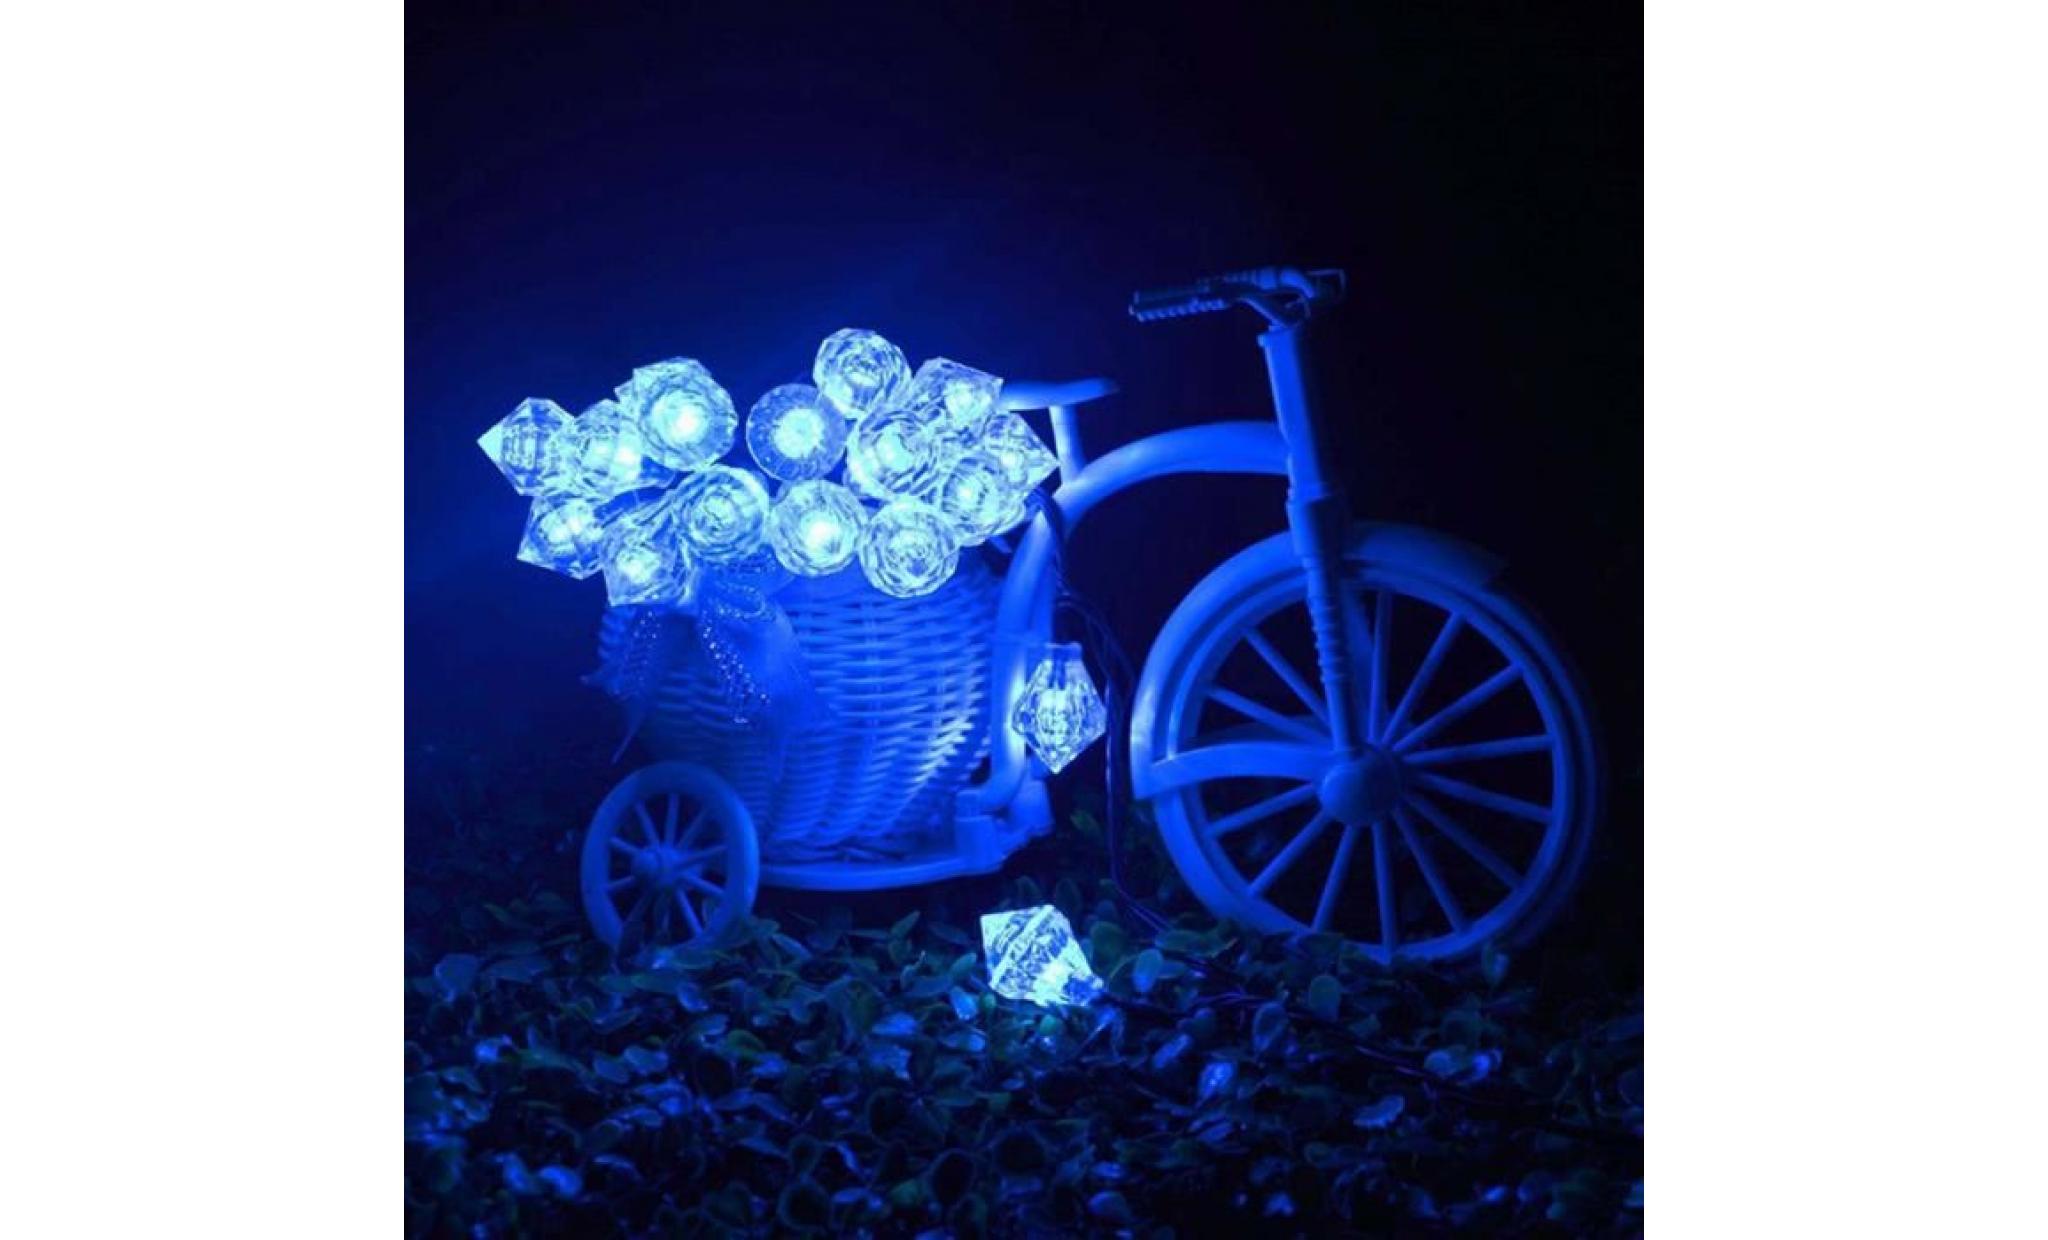 dpp61109564bu®20 led solaire puissance extérieure diamant lumière chaîne jardin fête fée lampe